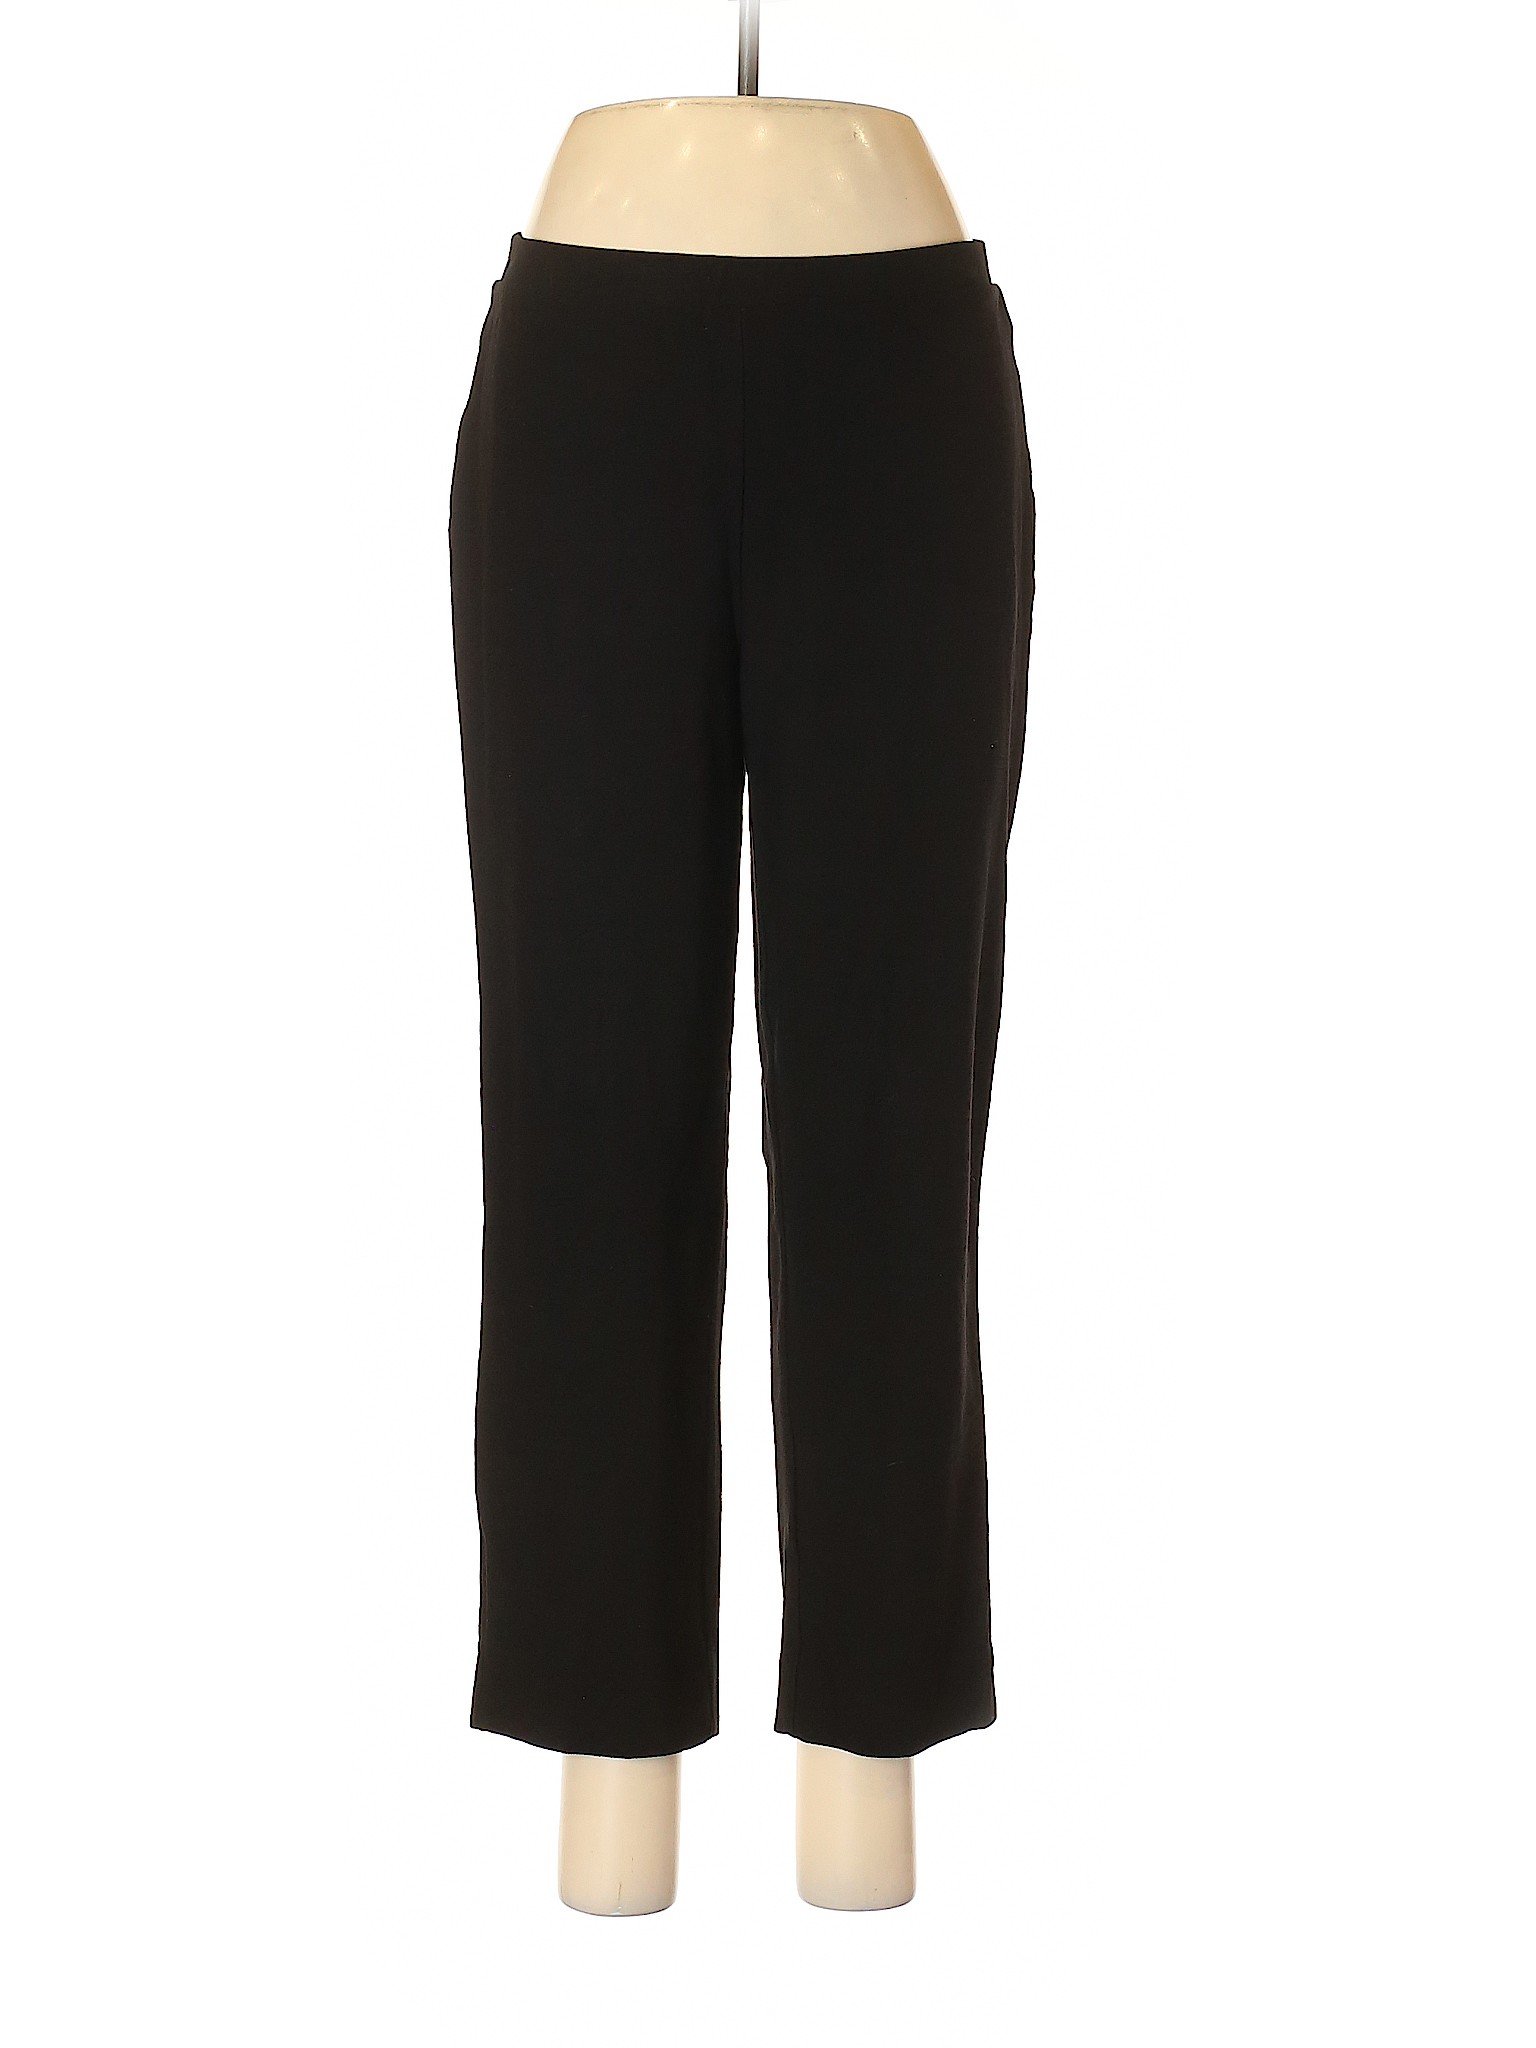 Marla Wynne Women Black Casual Pants M | eBay